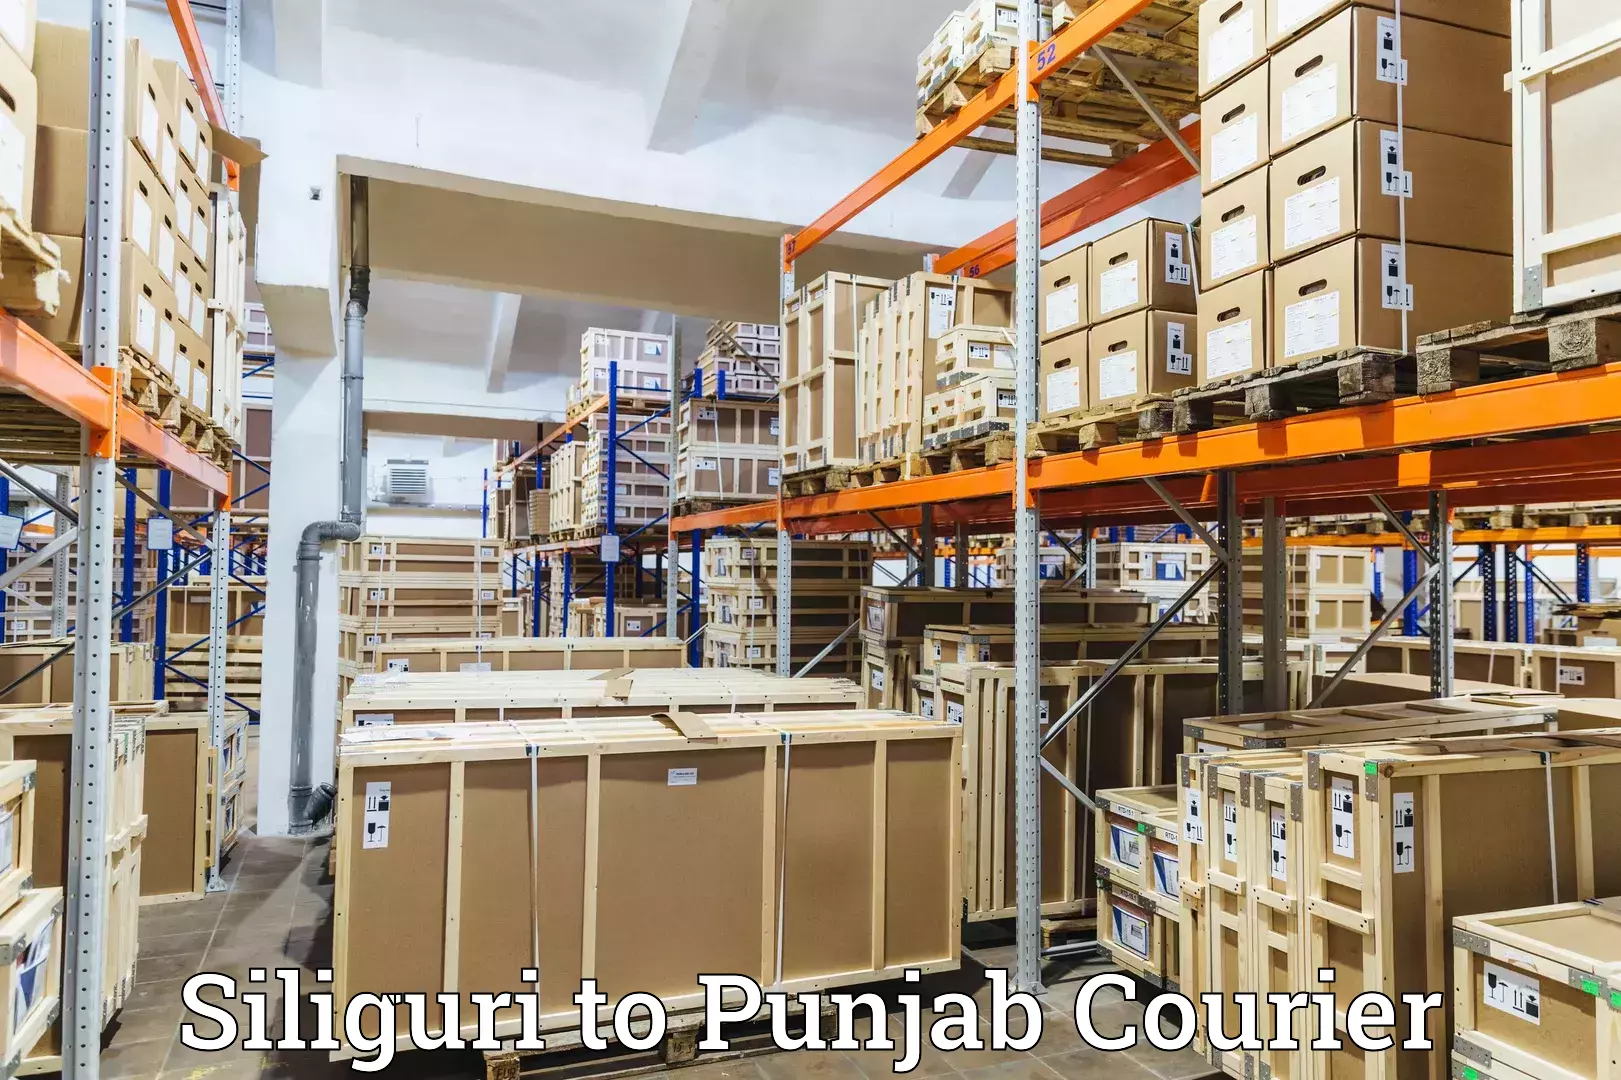 E-commerce shipping partnerships Siliguri to Jhunir